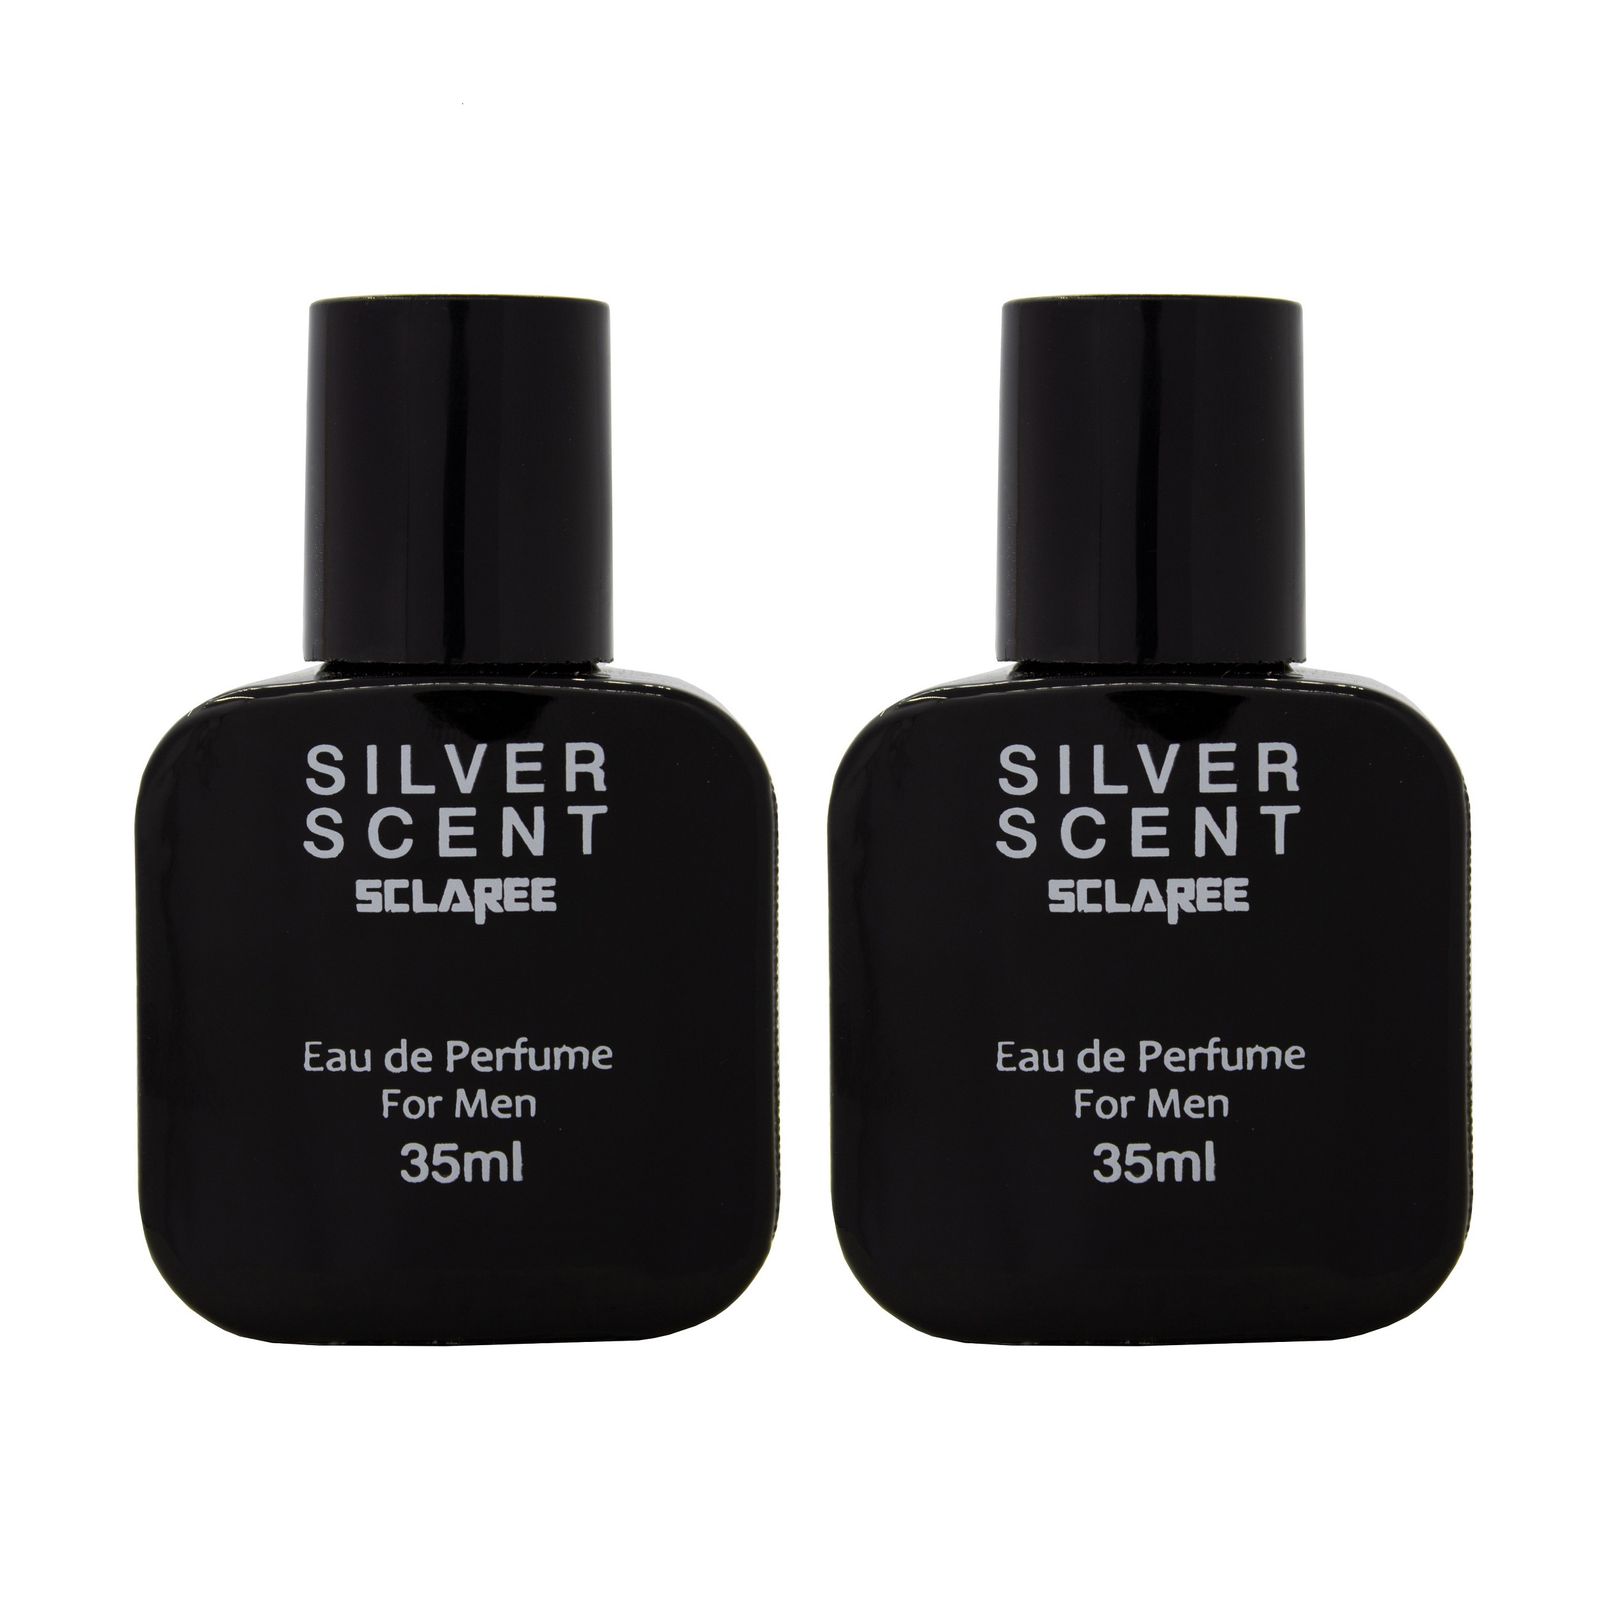  عطر جیبی مردانه اسکلاره مدل  Silver scent حجم 35 میلی لیتر مجموعه دو عددی  -  - 1